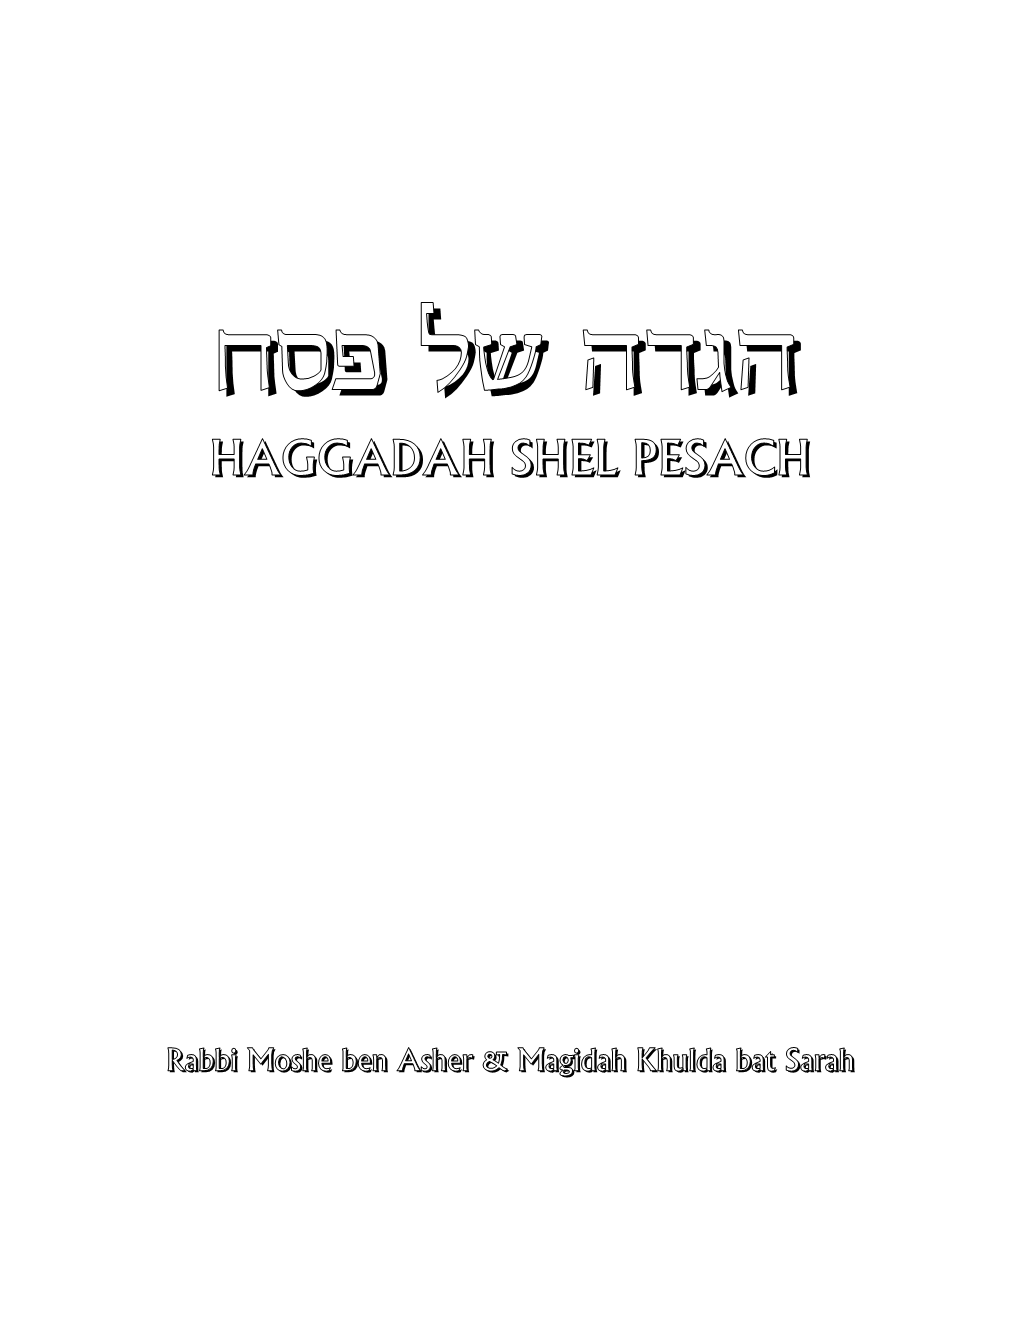 Haggadah Shel Pesach